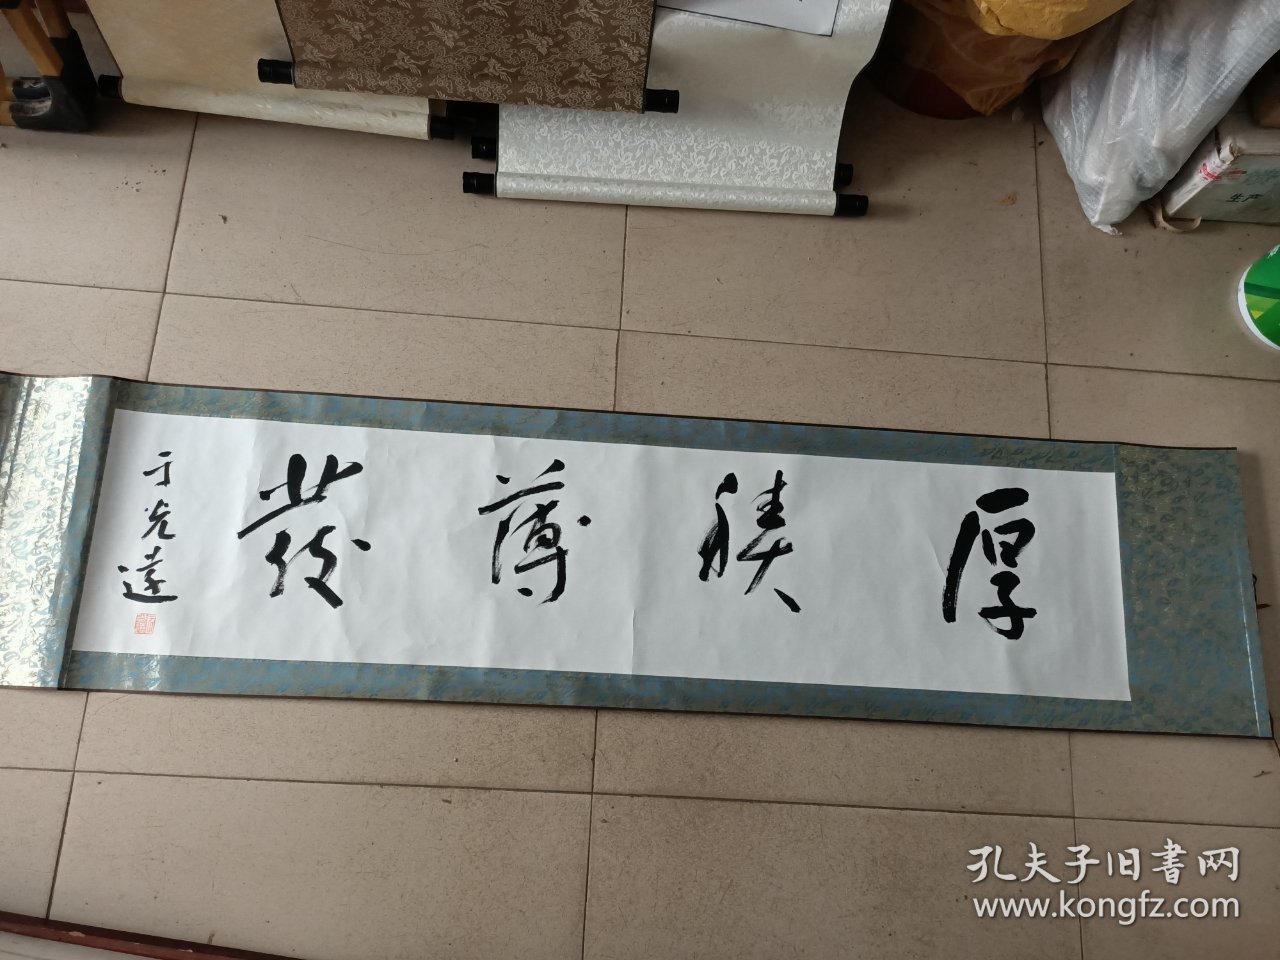 于光远 近现代上海名人 著名经济学家哲学家 书法横幅，尺寸130*29.5厘米